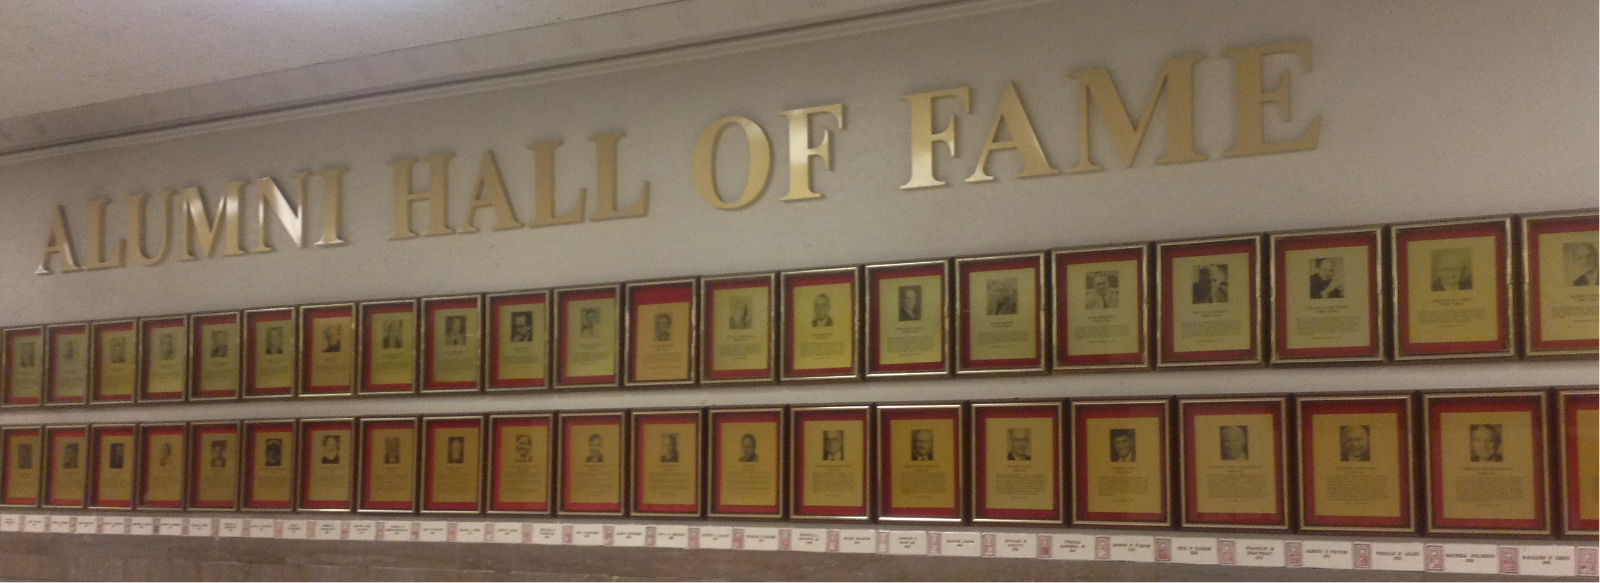 Alumni Hall of Fame Wall